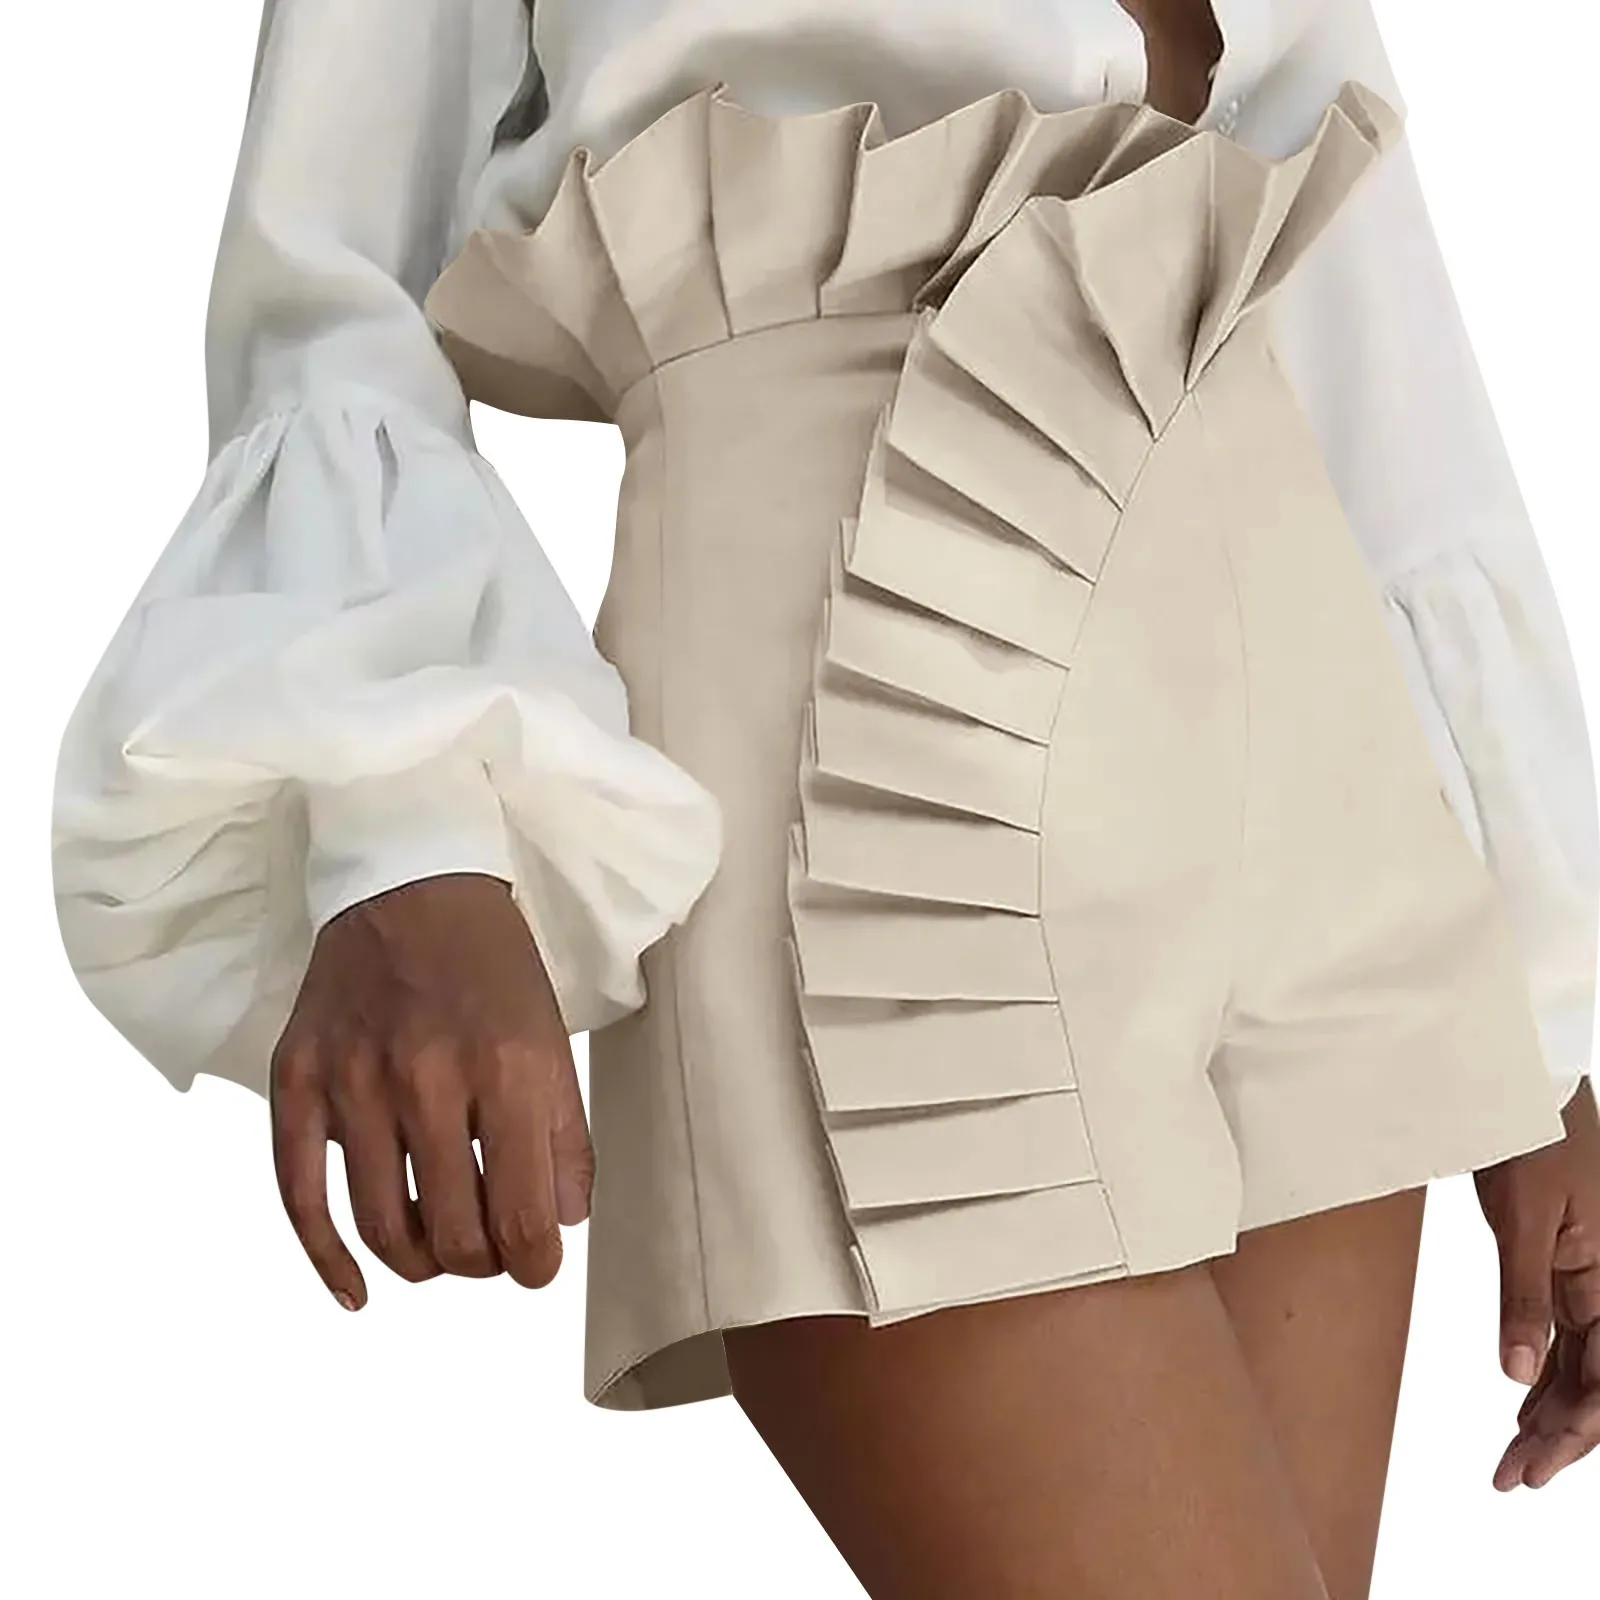 2023 Nova Moda de Vestido das Mulheres de Baixo Plissado Bainha de Saia Ruched Cintura Alta Shorts Elegantes Verão Casual de Vestuário Feminino Vestido